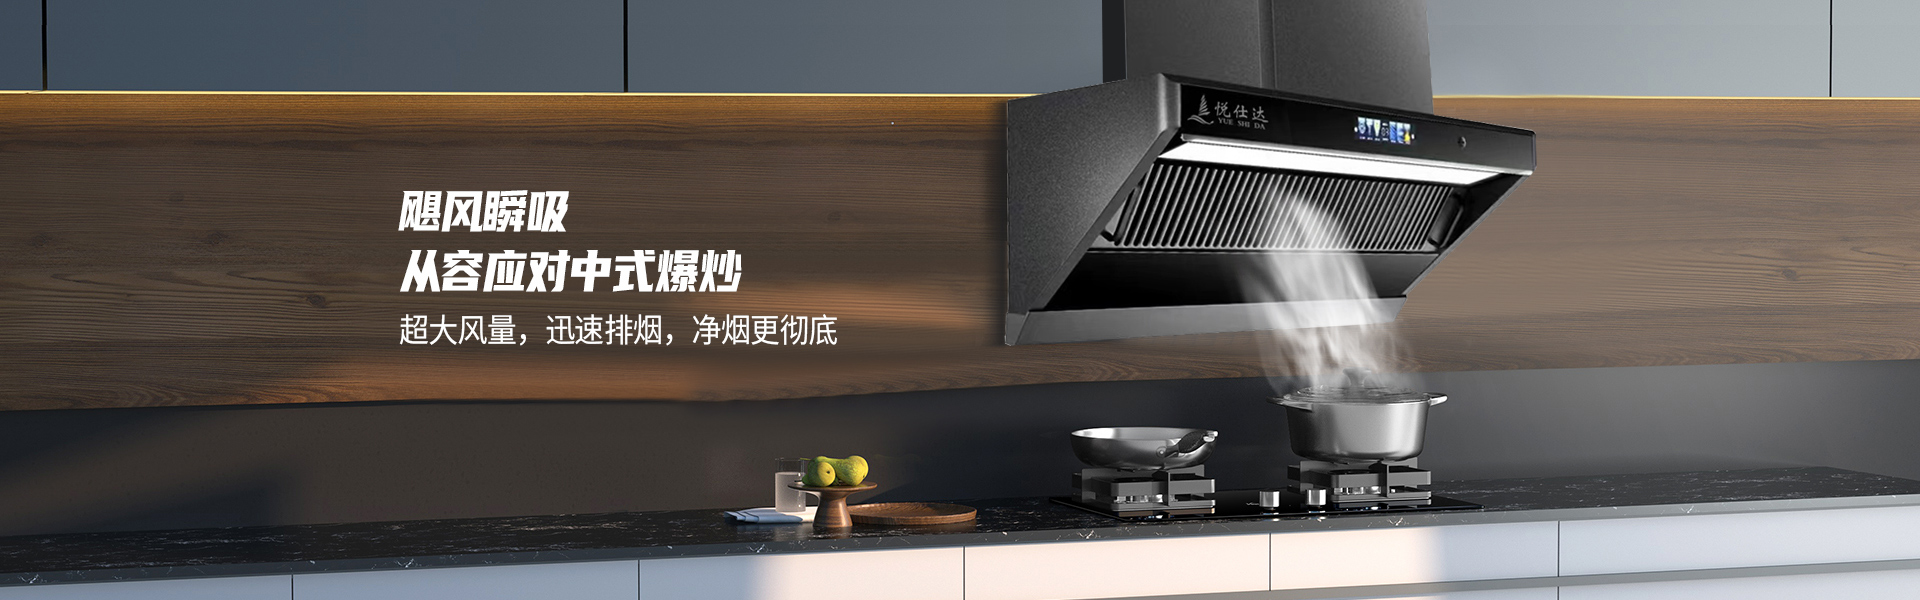 广东悦仕达电器有限公司,悦仕达专业生产悦仕达厨卫电器